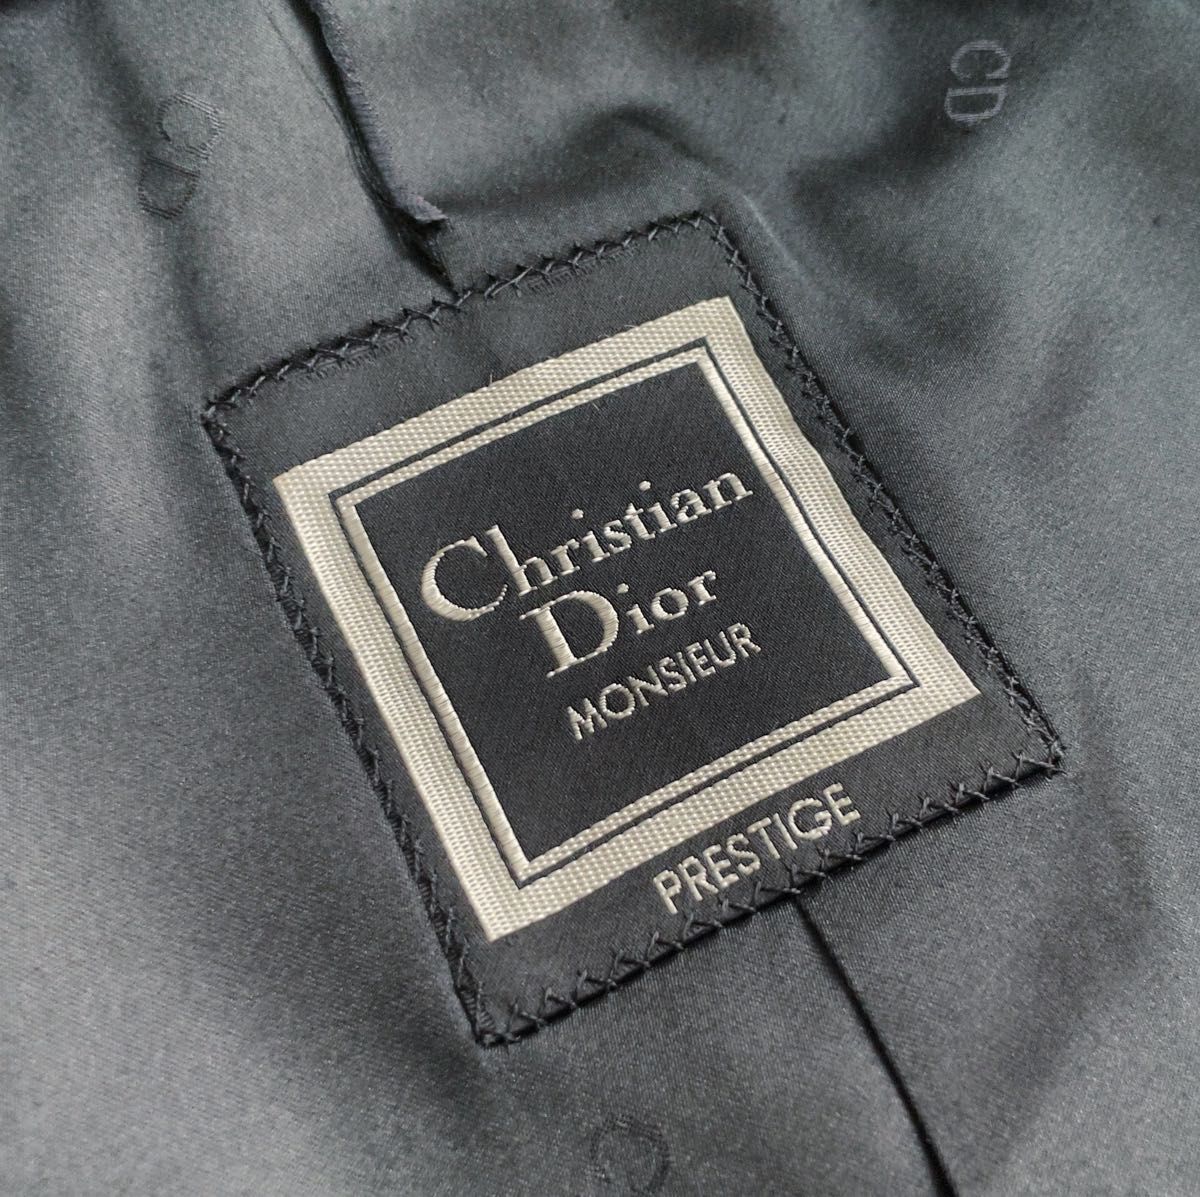 【Christian Dior】カシミヤ混 ウール ステンカラー コート